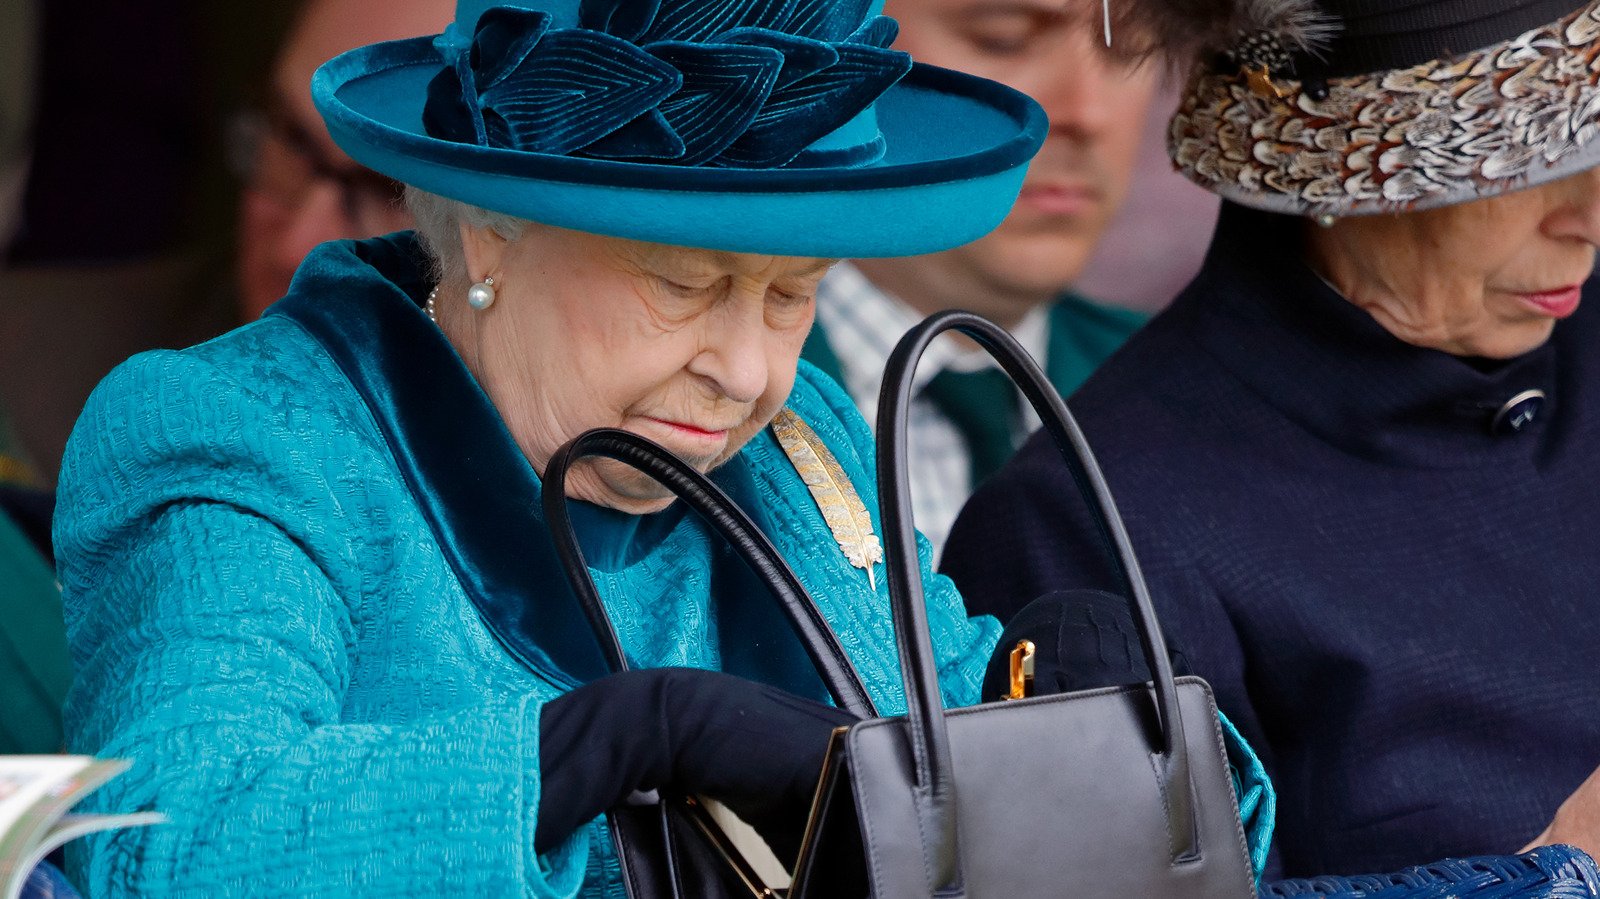 Can Helen Mirren Make the Queen's Handbag Famous?